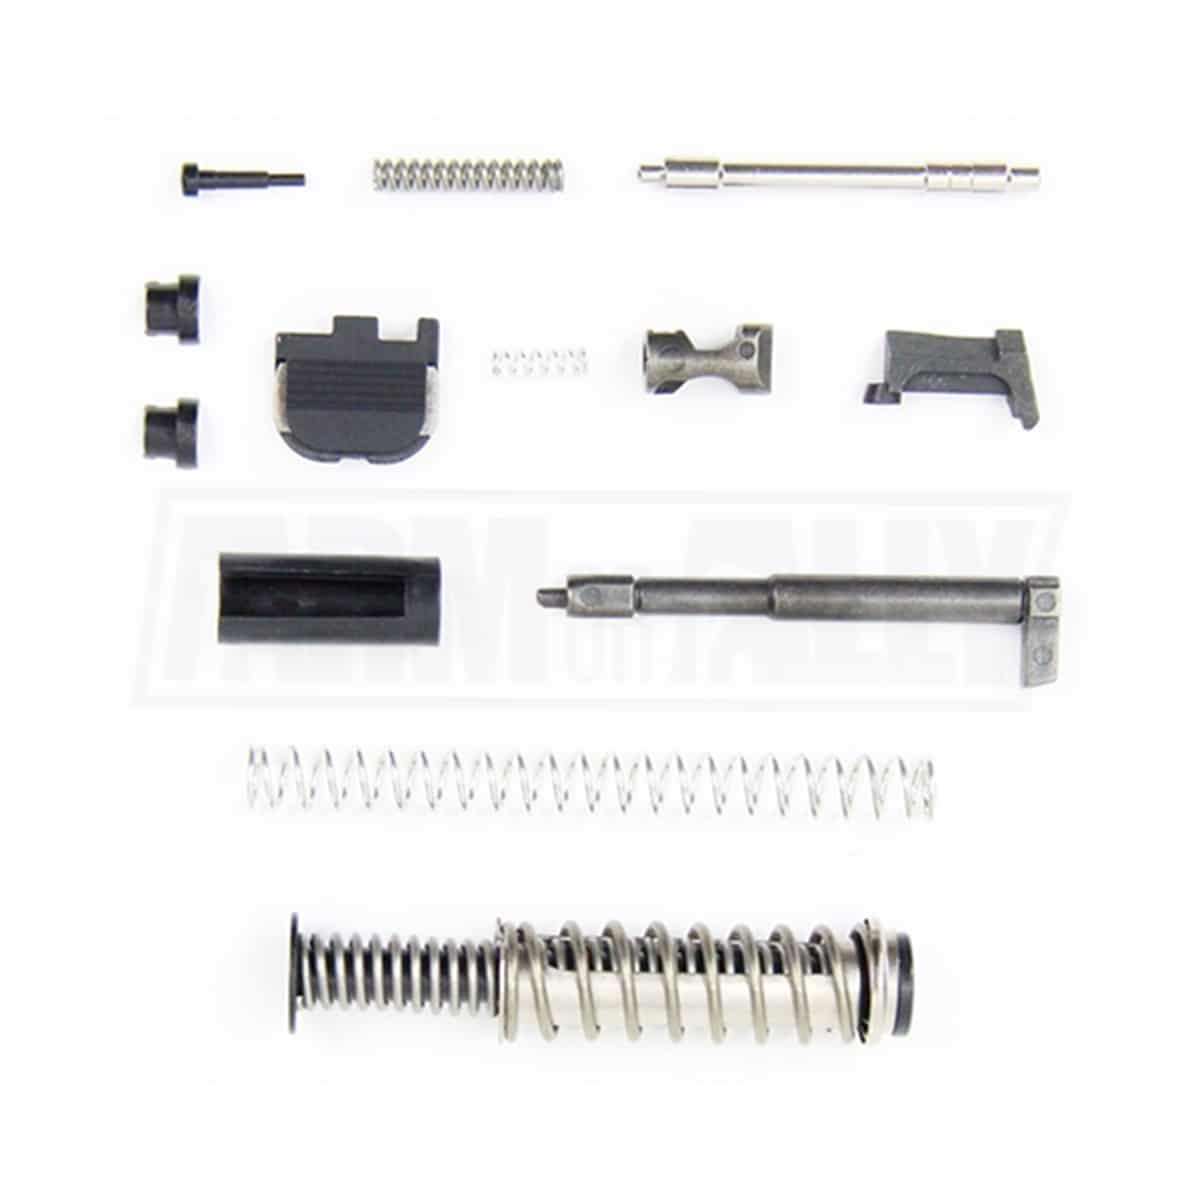 G43 Slide Completion Kit G43 Upper Parts Kit